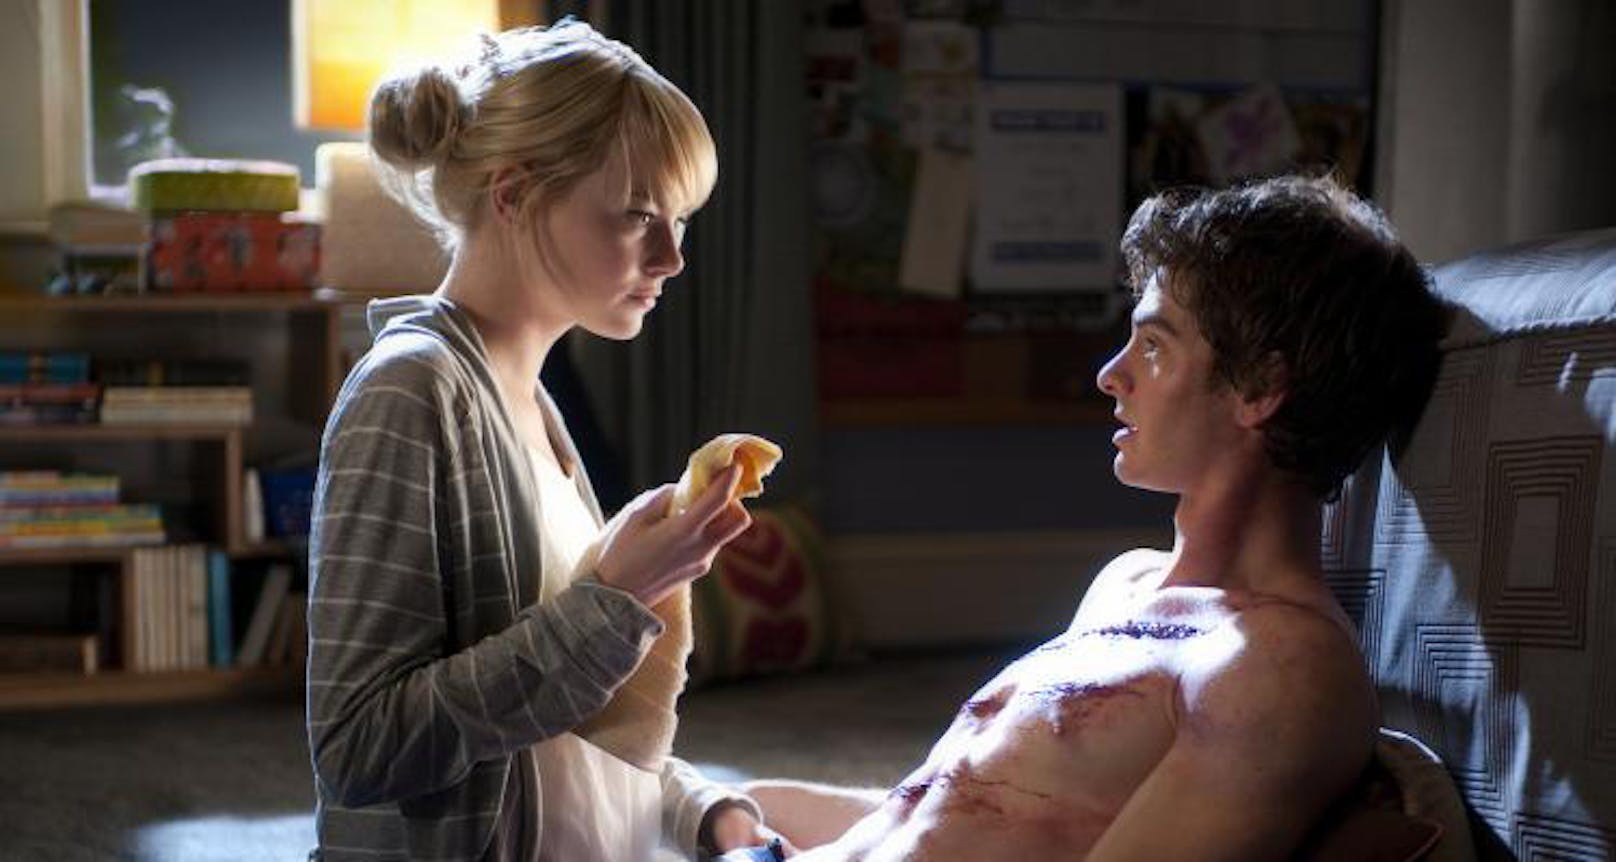 In <em>"The Amazing Spider-Man"</em> steht Oscarpreisträgerin <strong>Emma Stone</strong> als Gwen Stacy ihrer großen Liebe Peter Parker (Andrew Garfield) bei.<br>